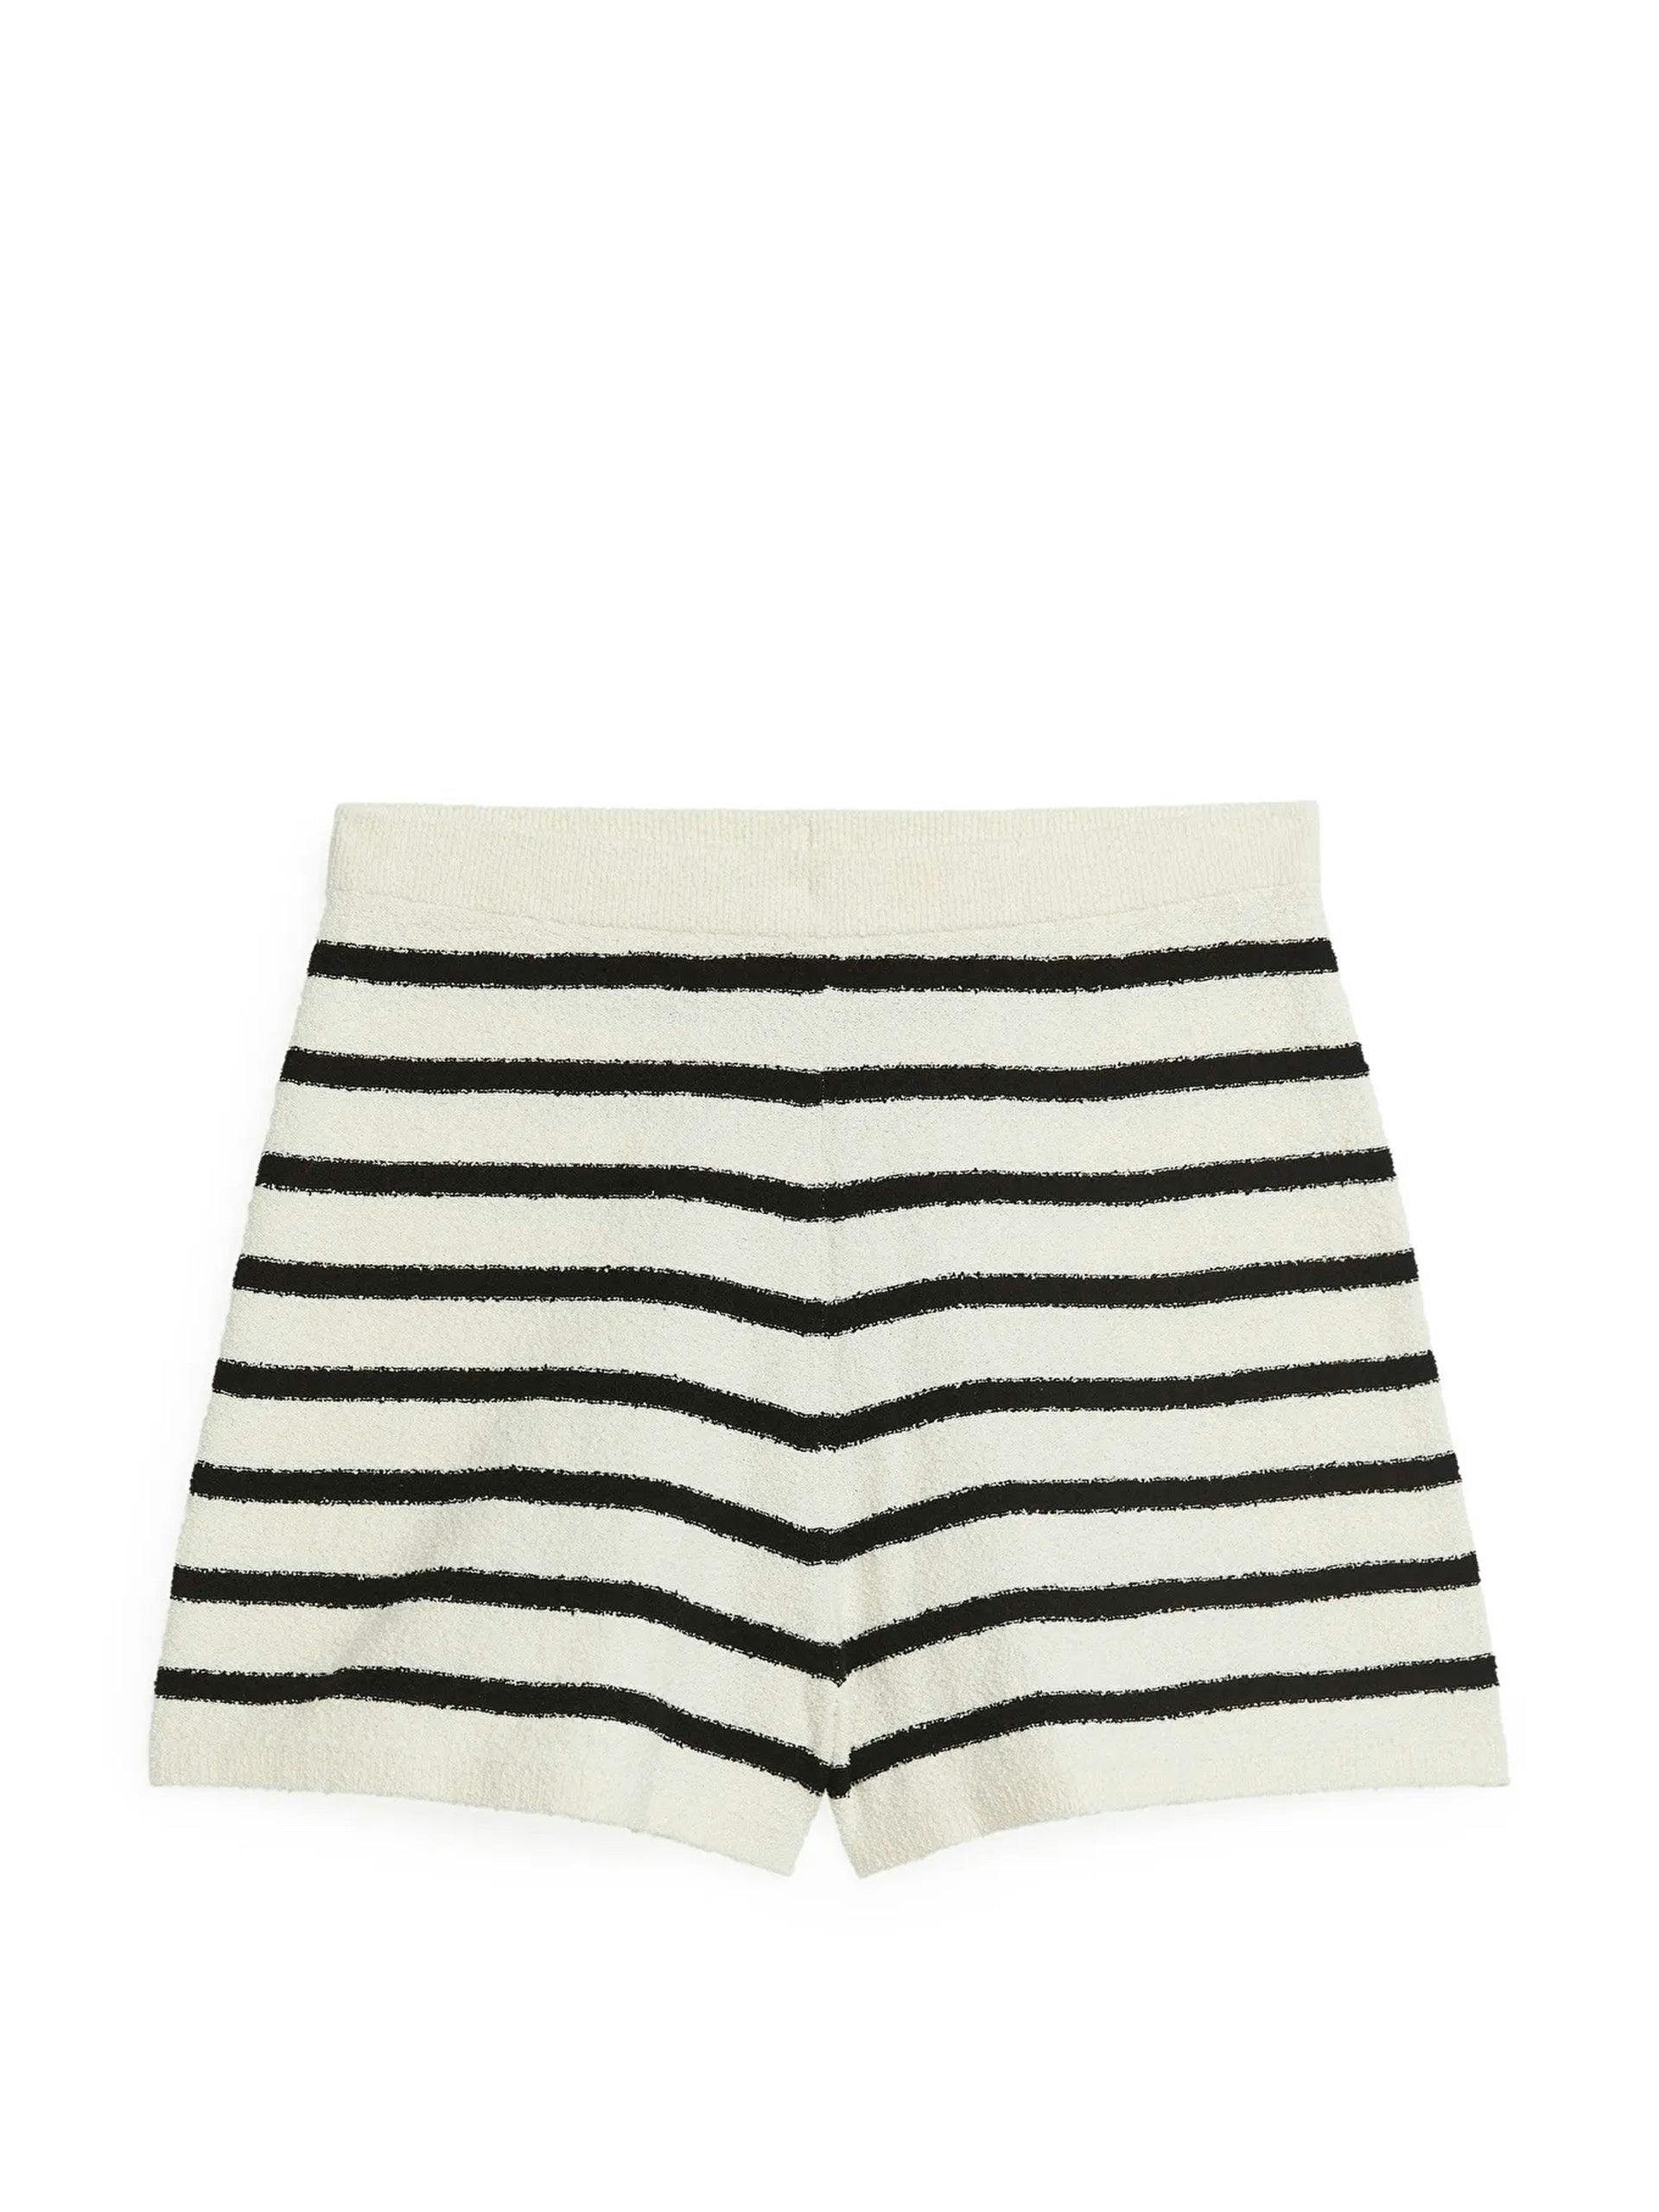 Bouclé striped shorts